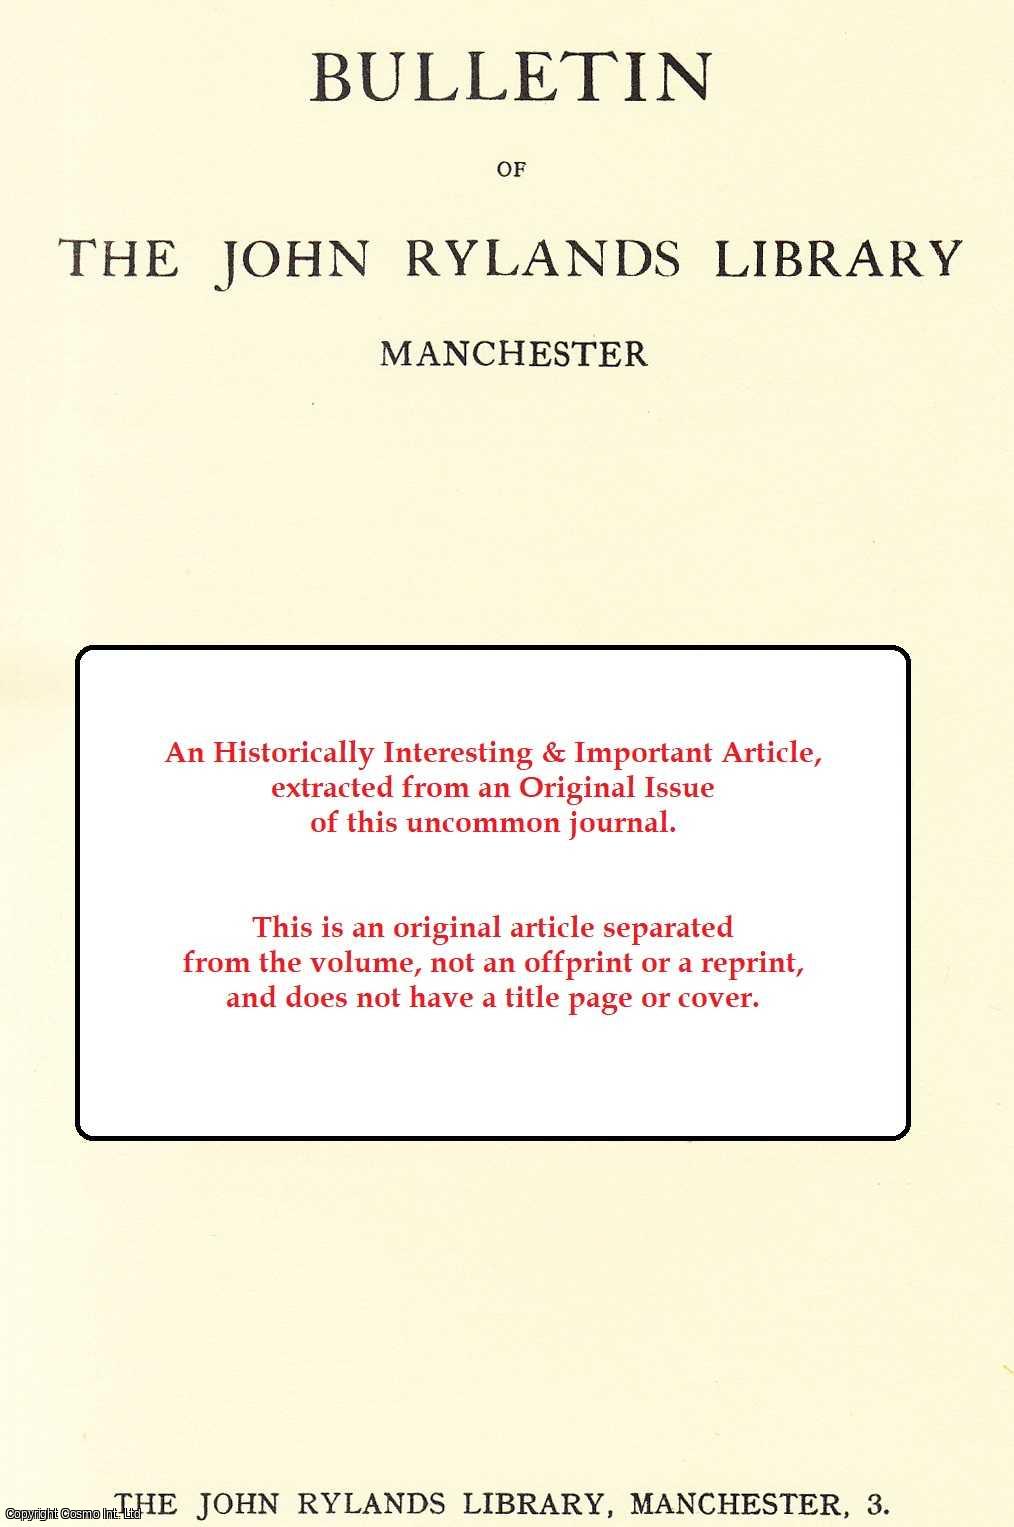 Jules Leroy - Notes sur Trois Manuscrits Syriaques de la John Rylands Library. An original article from the Bulletin of the John Rylands Library Manchester, 1964.